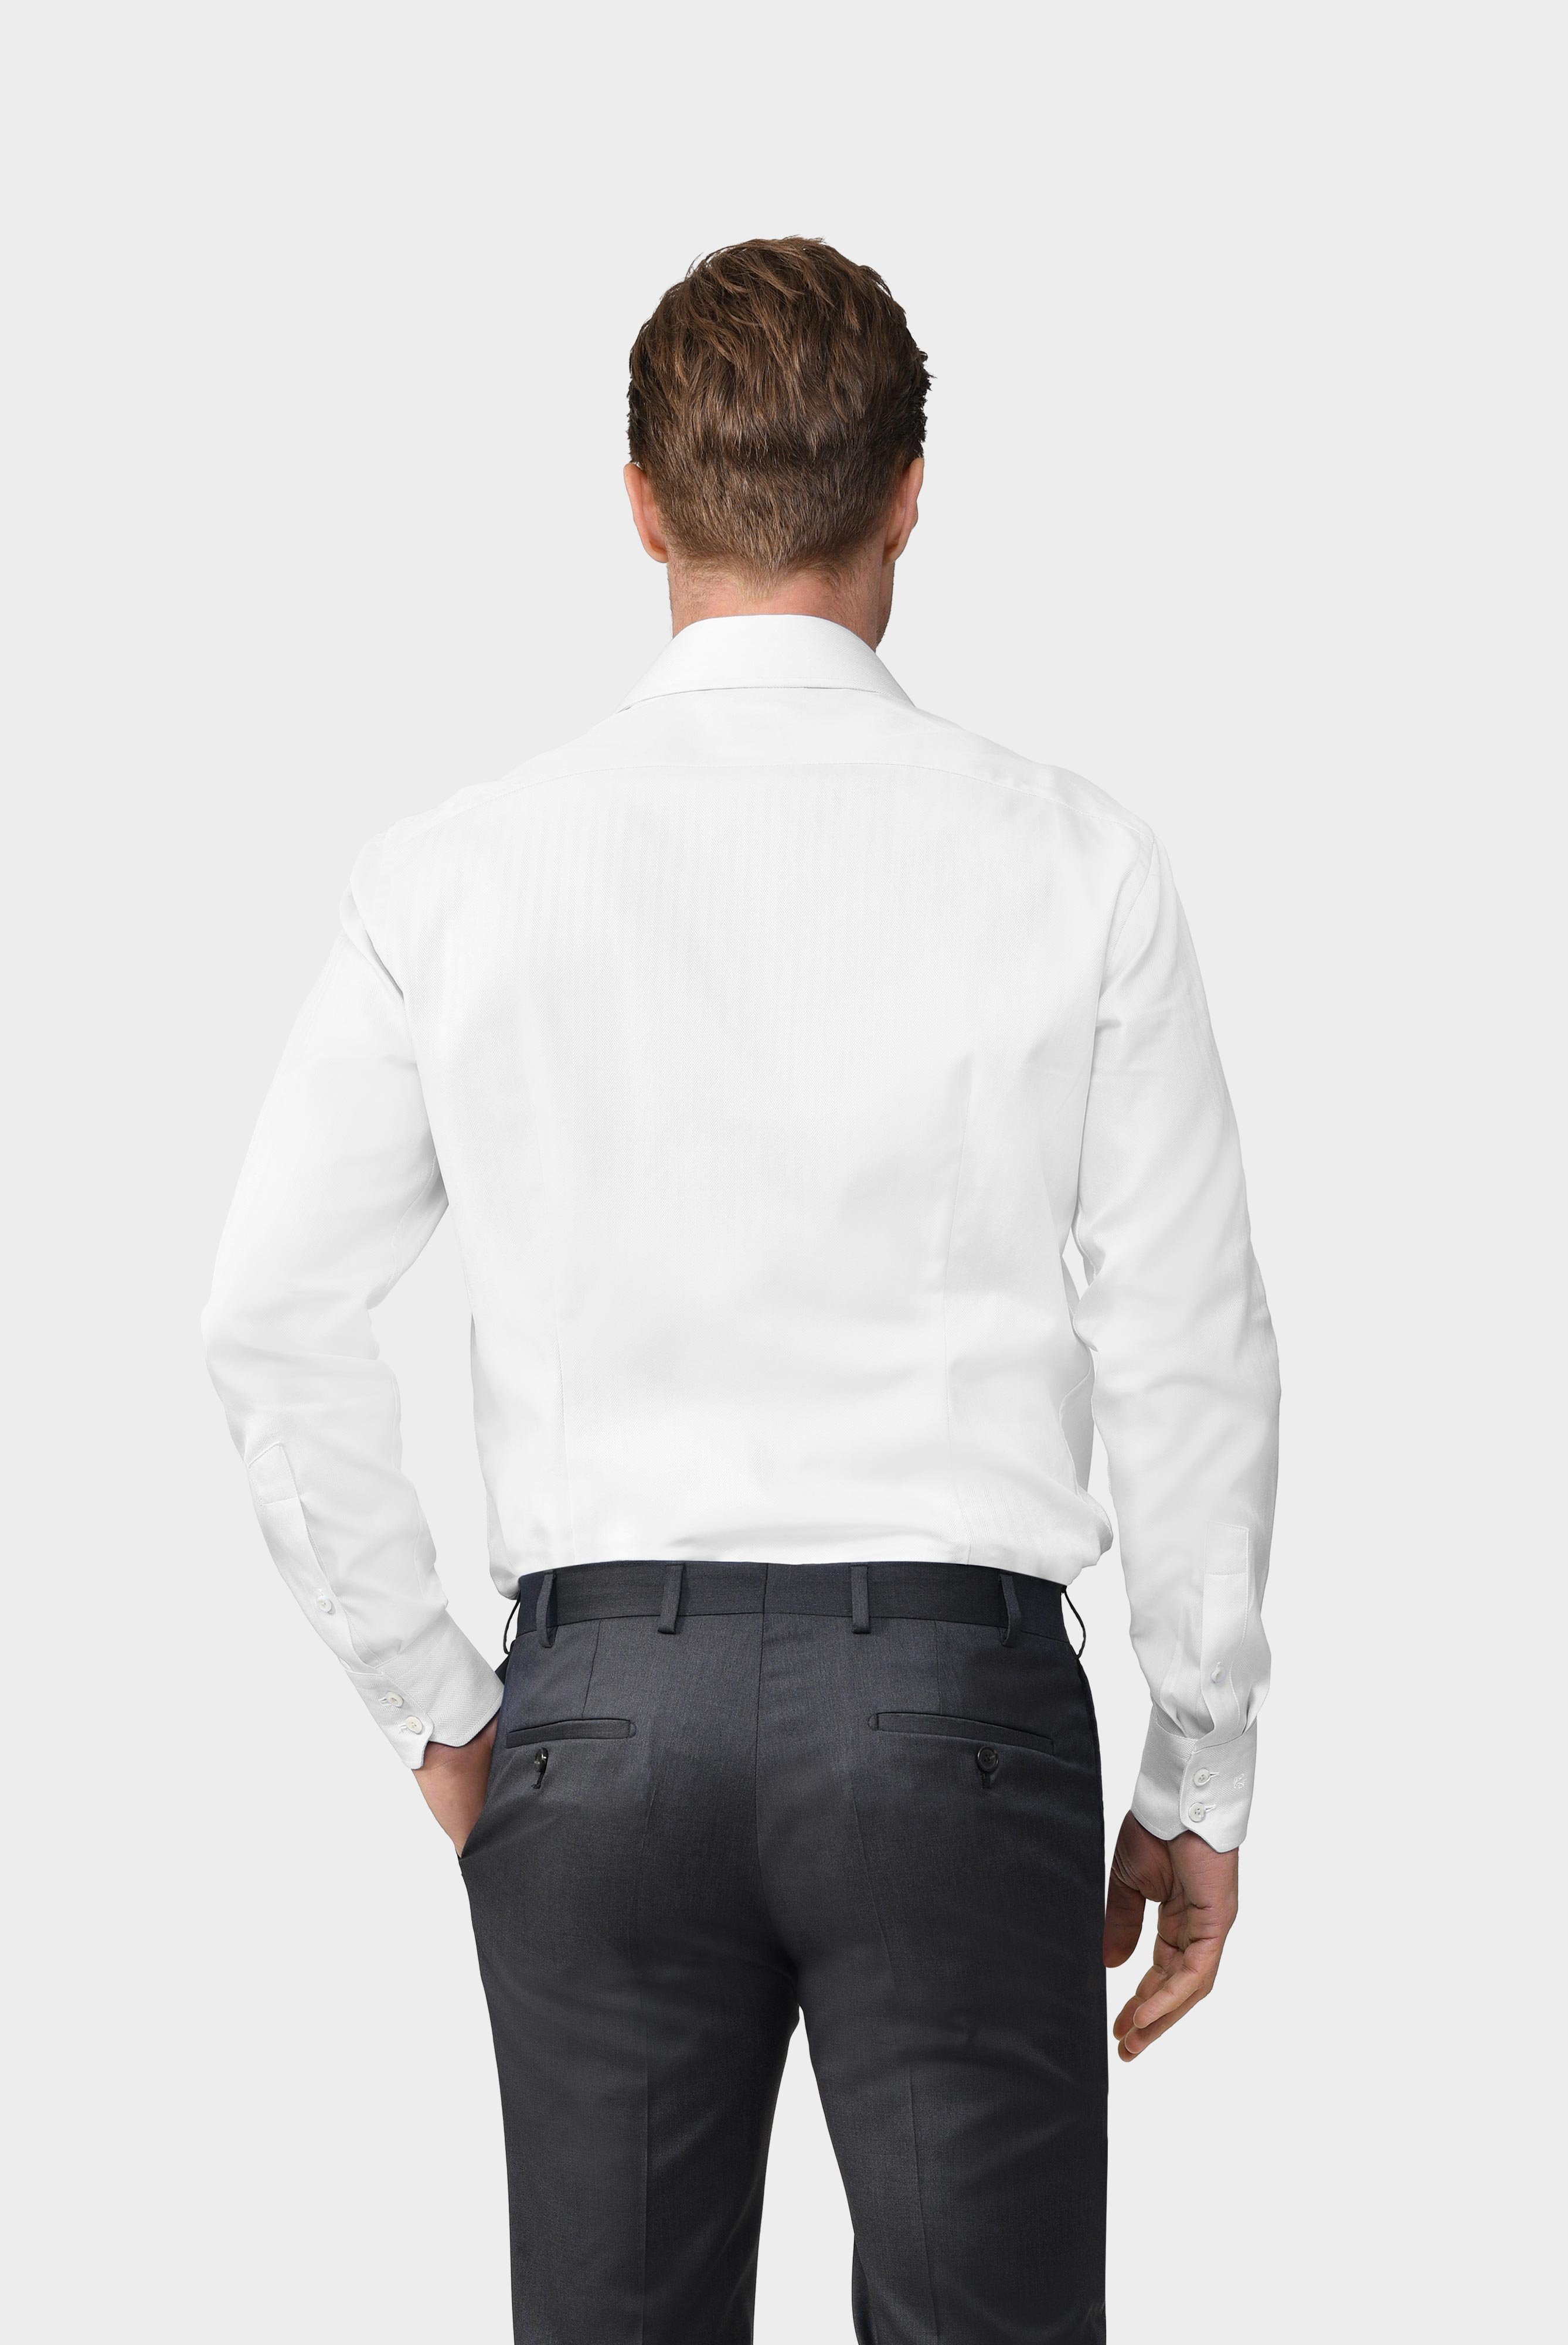 Business Shirts+Herringbone Twill Shirt Tailor Fit+20.2020.AV.102501.000.37